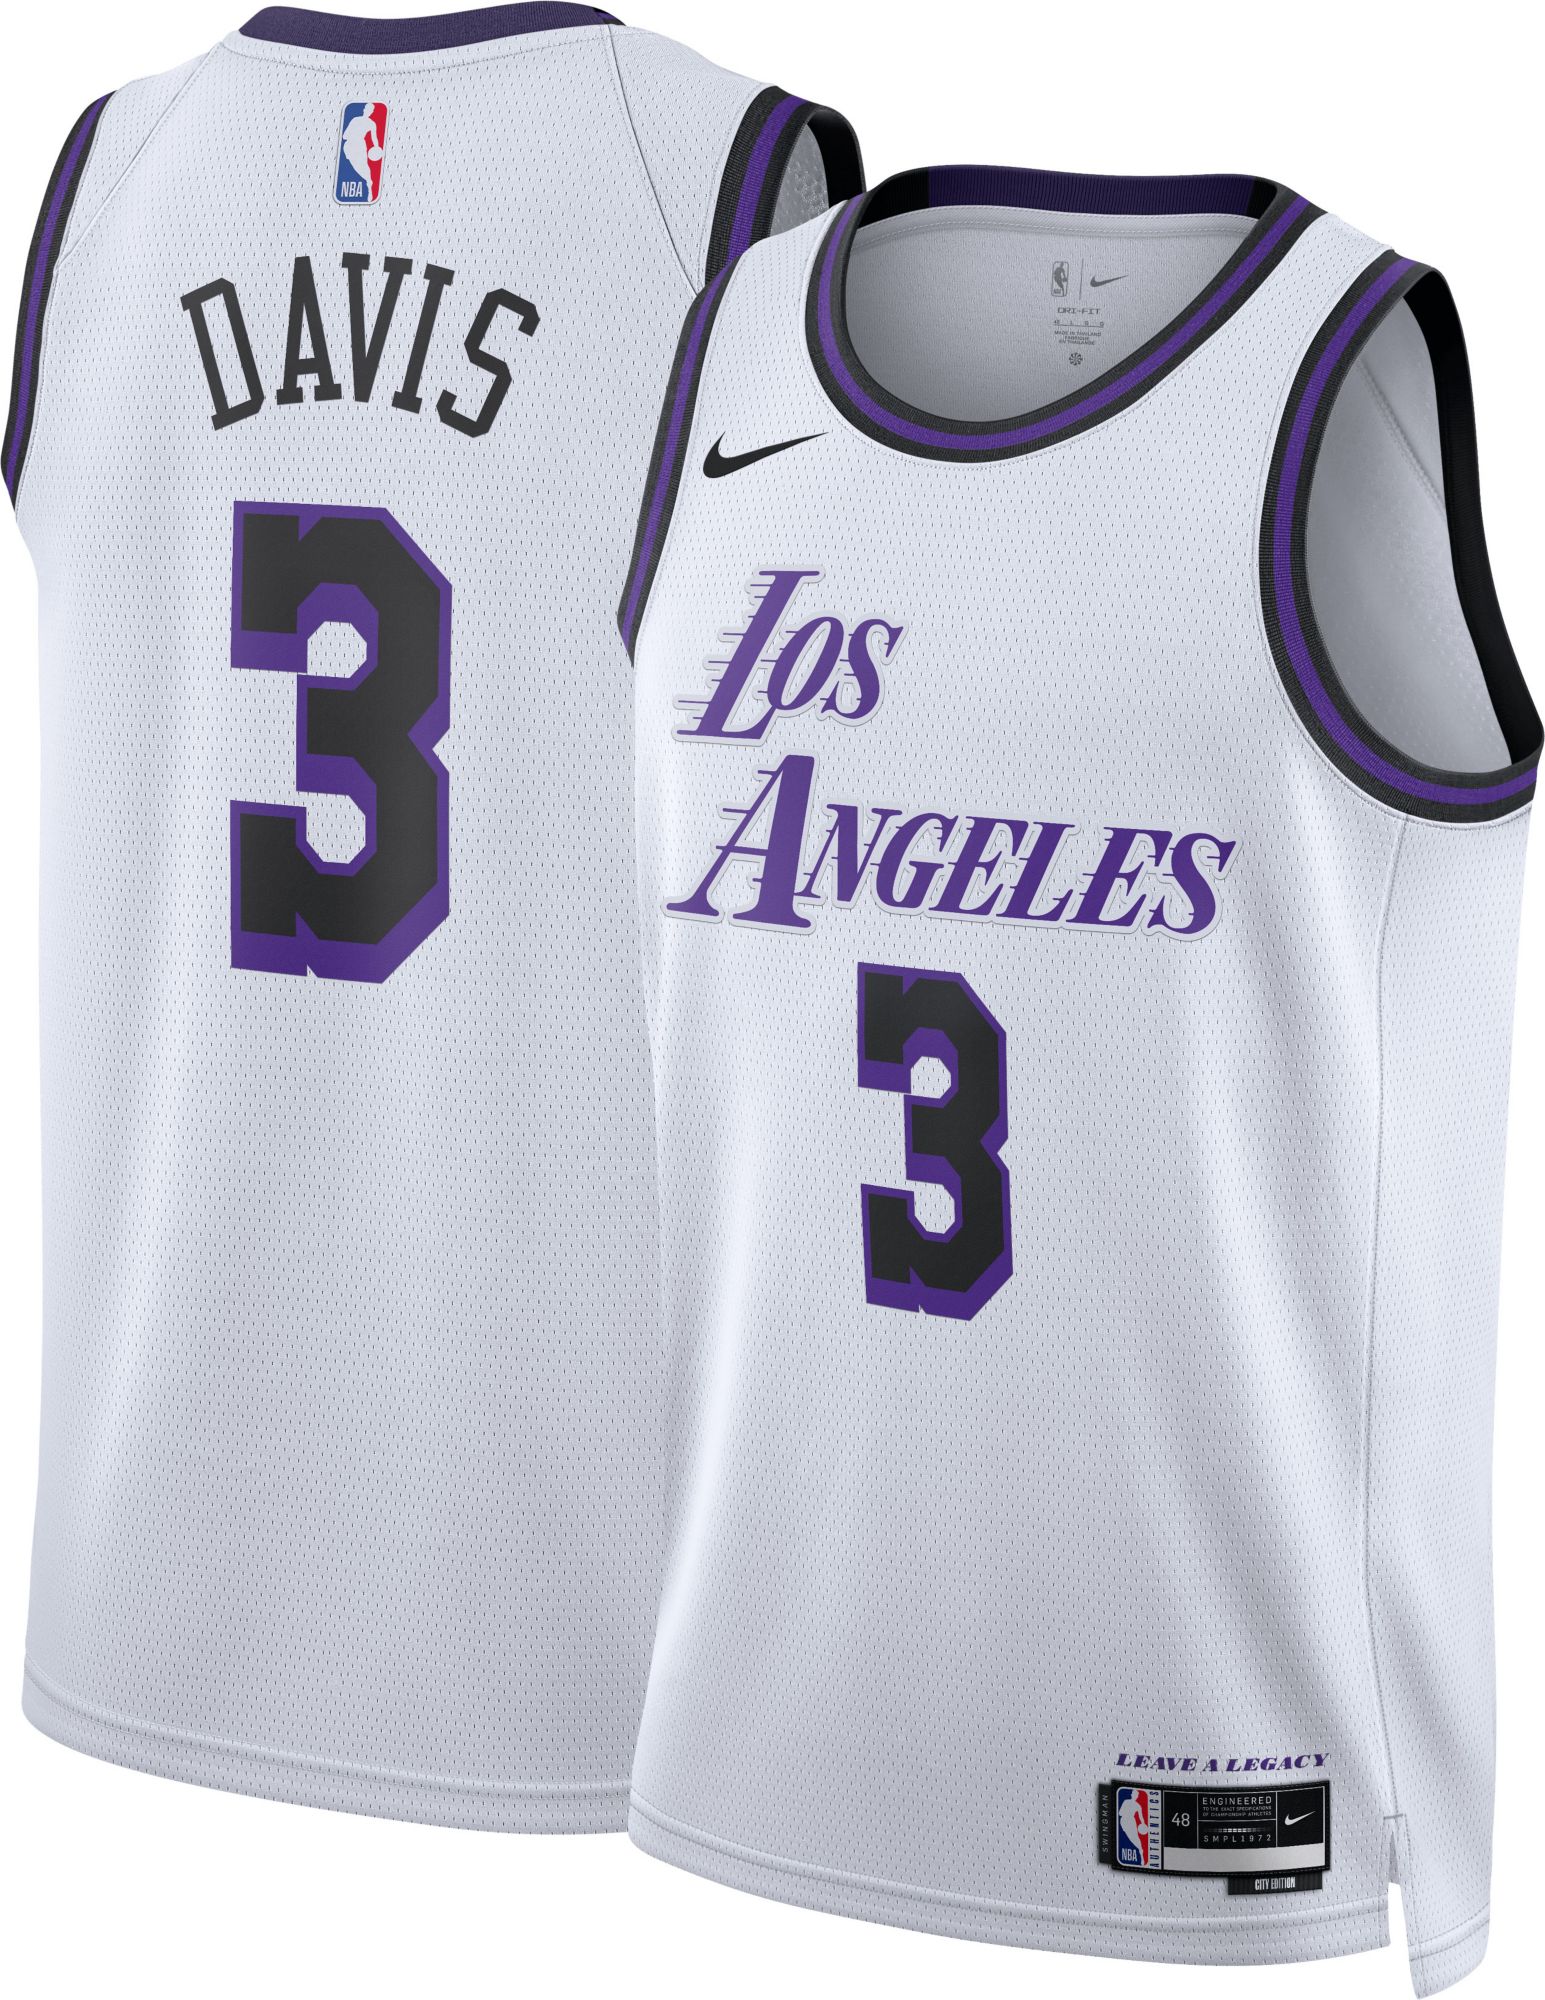 LeBron James Purple Lakers Jersey 21' — SportsWRLDD